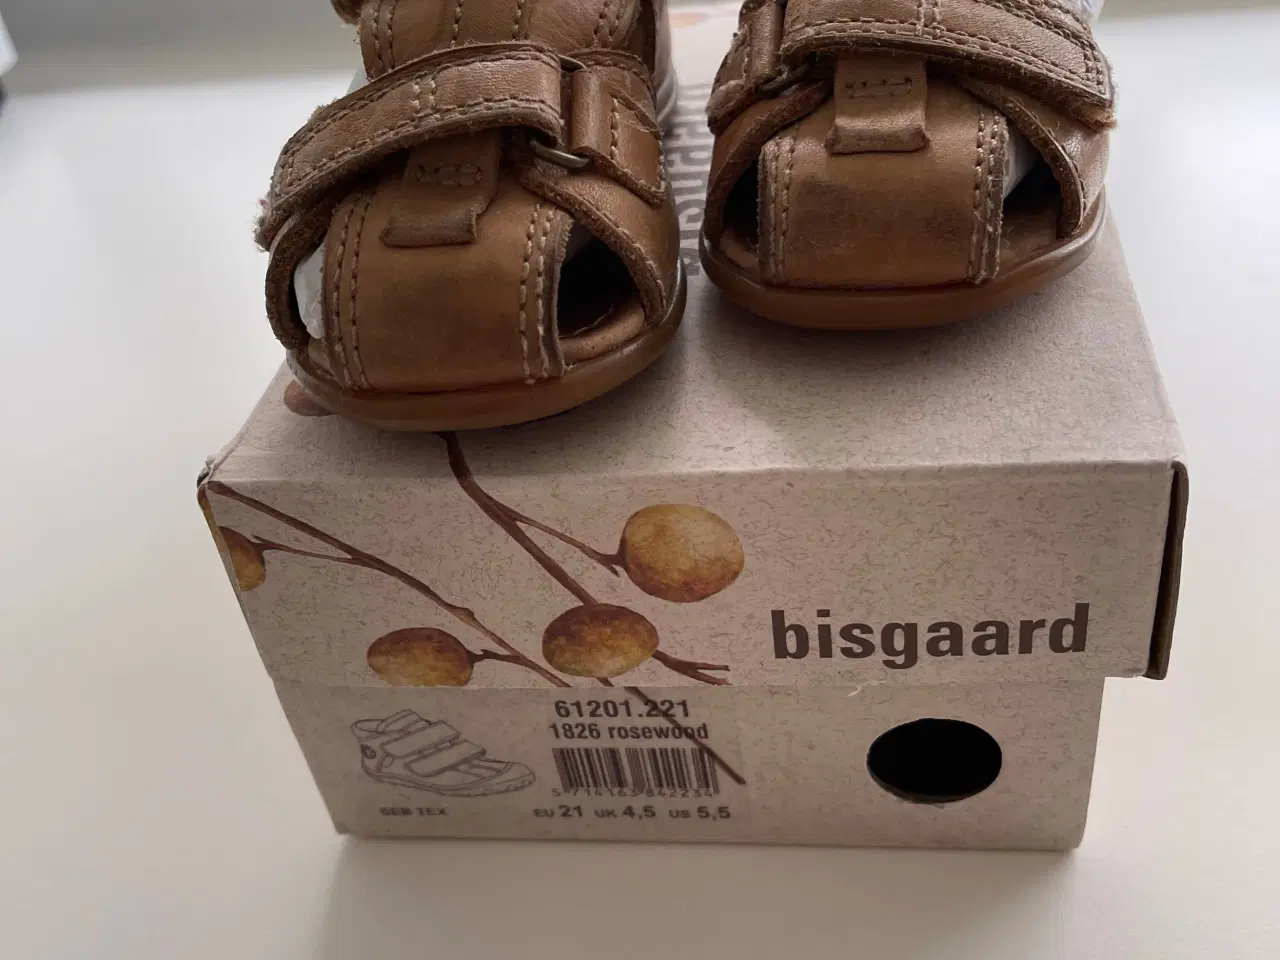 Billede 1 - Bisgaard sandaler